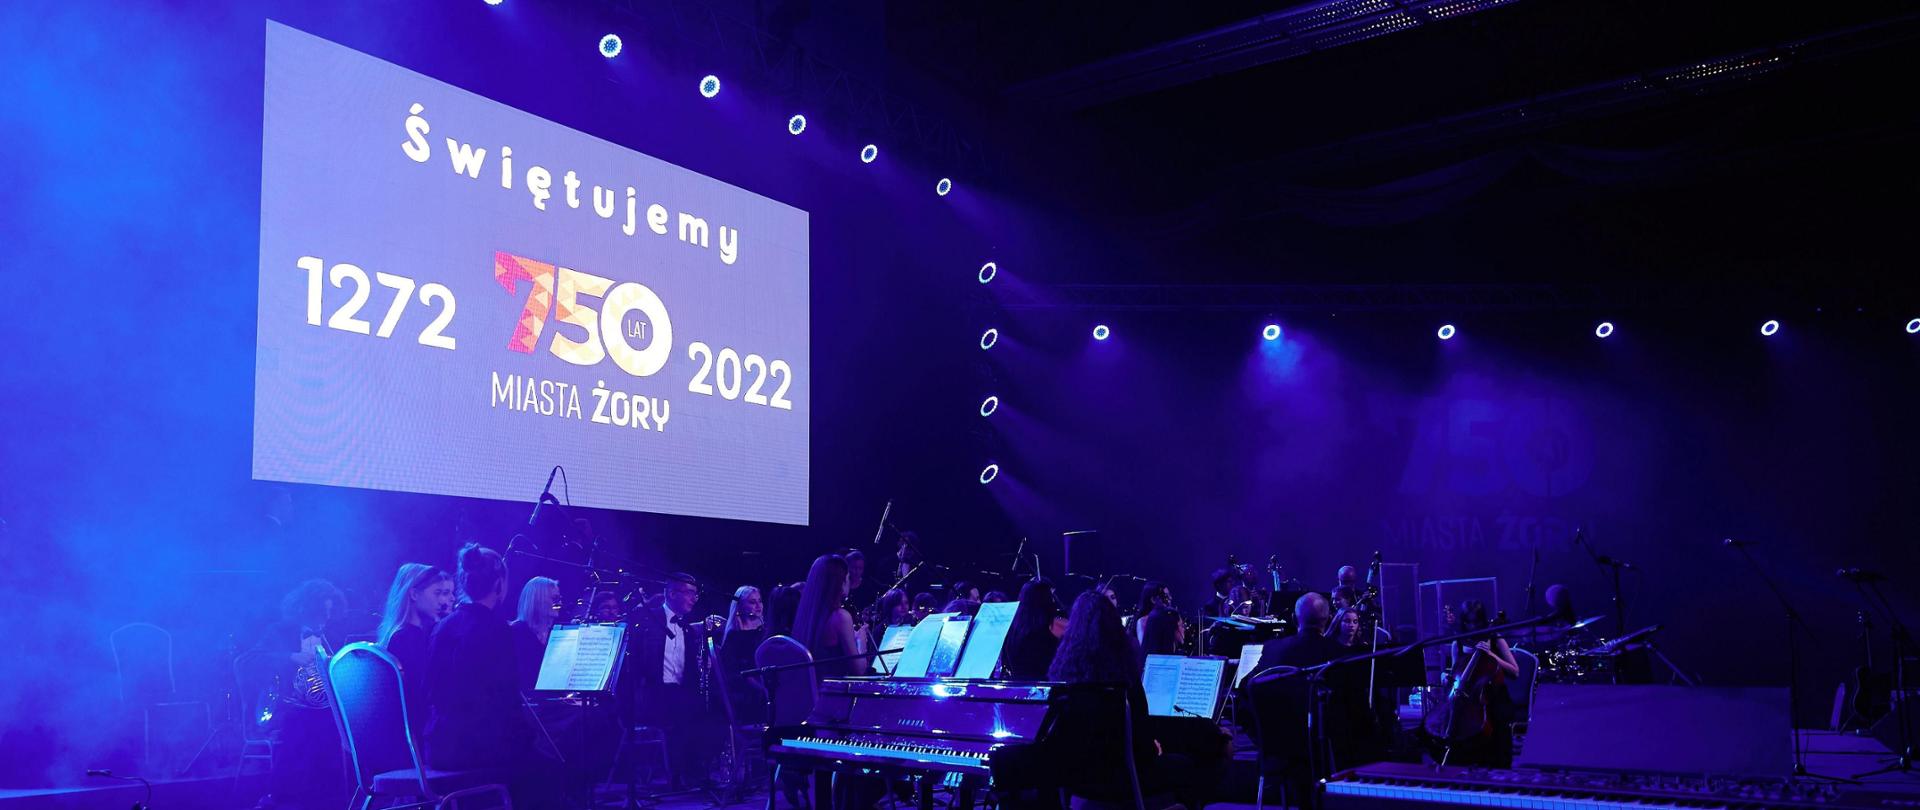 W lewym górnym rogu duży telebim z napisem świętujemy 750 lat miasta Żory 1272 do 2022, poniżej na scenie młodzieżowa orkiestra symfoniczna w trakcie koncertu w ramach obchodów rocznicowych.